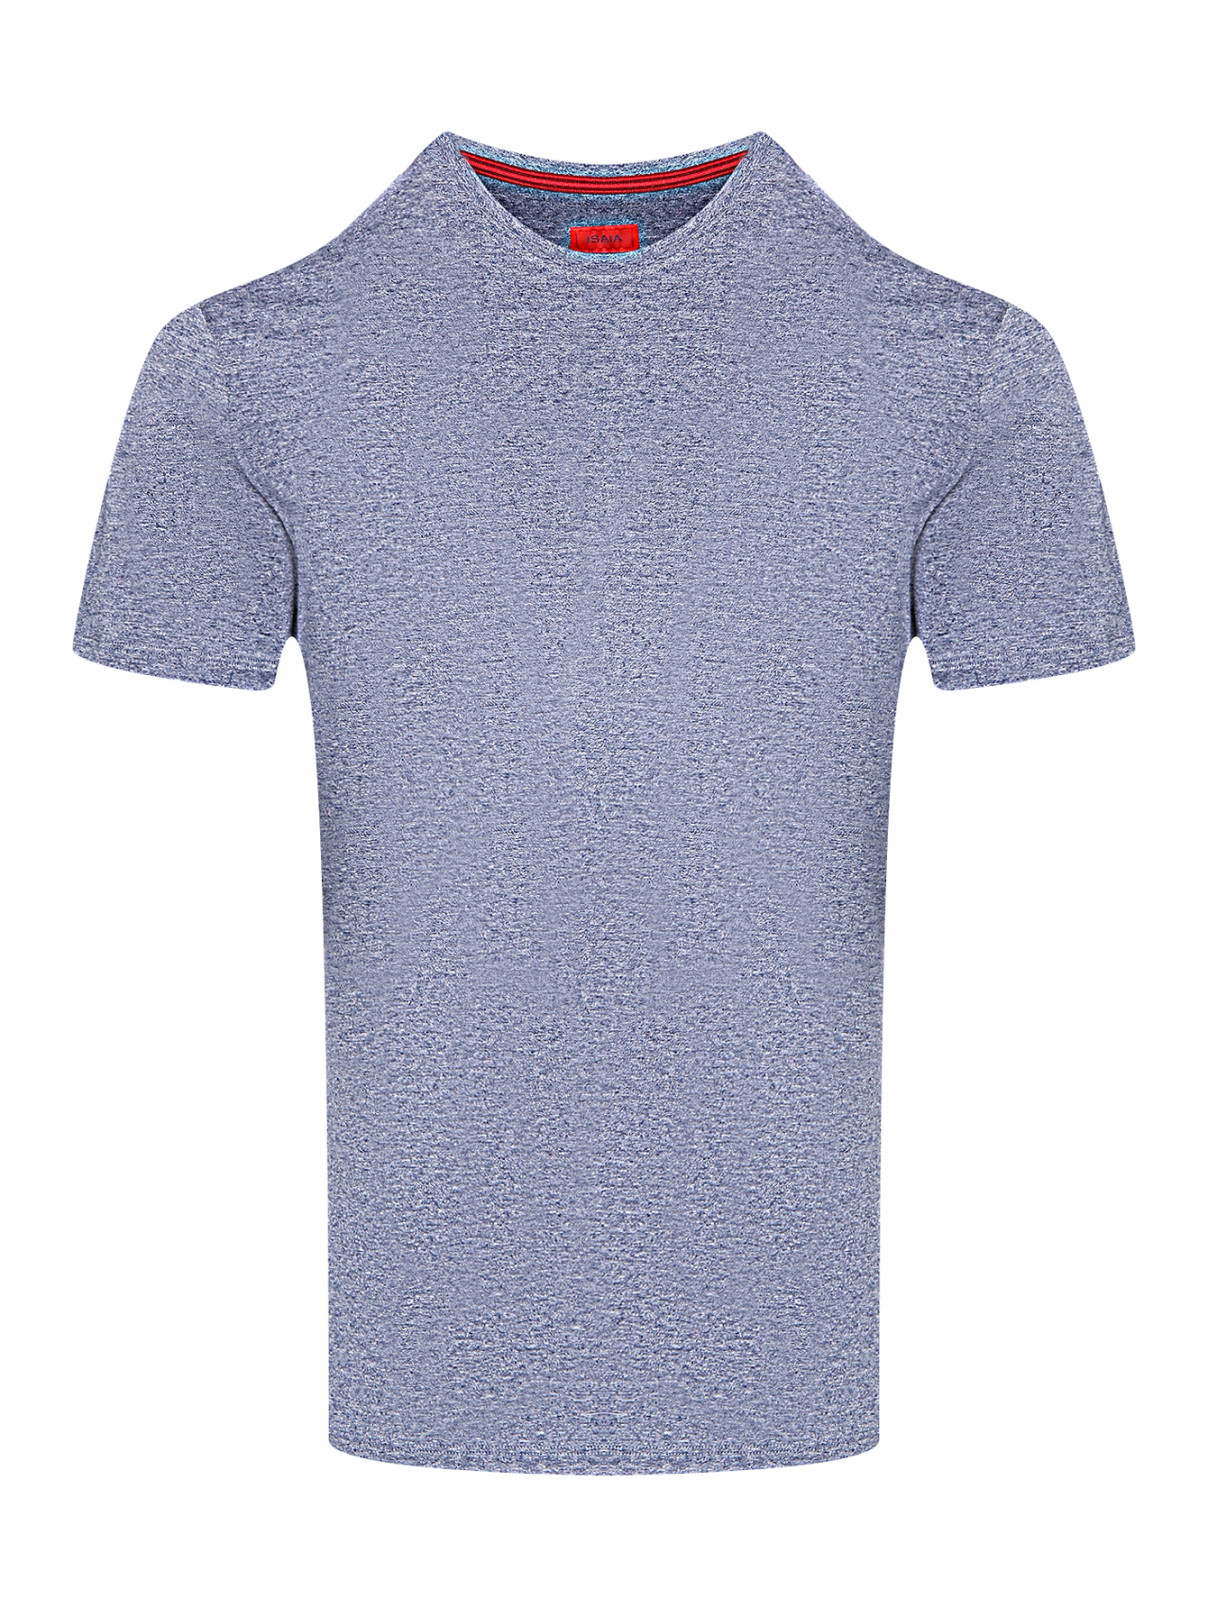 Базовая футболка из хлопка Isaia  –  Общий вид  – Цвет:  Синий